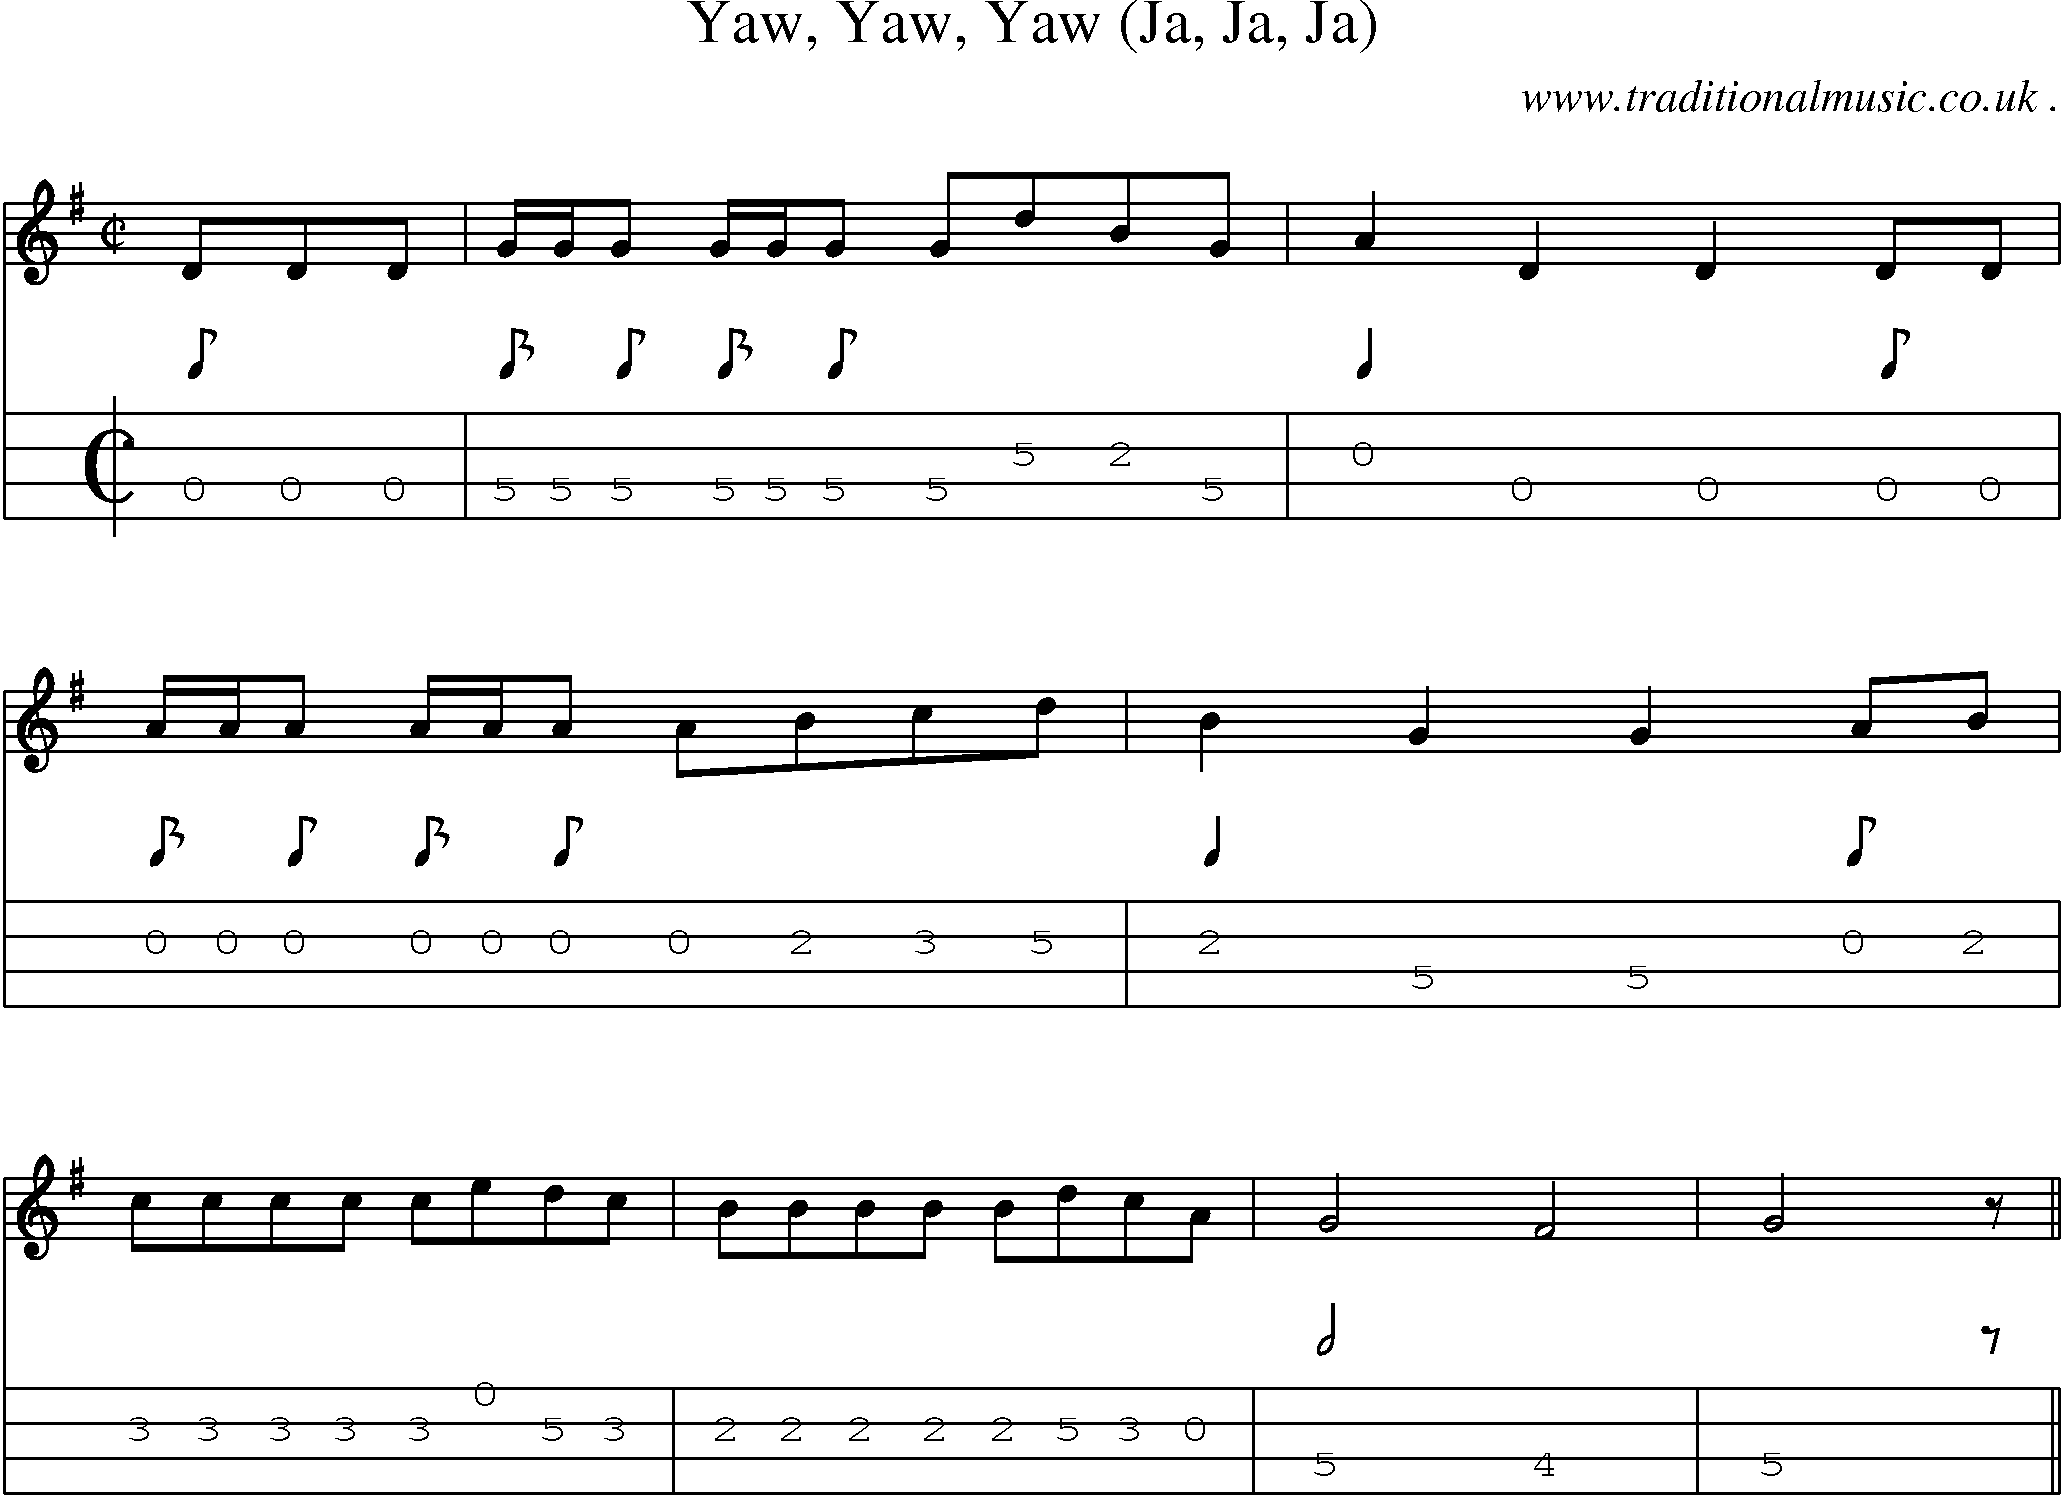 Sheet-Music and Mandolin Tabs for Yaw Yaw Yaw (ja Ja Ja)